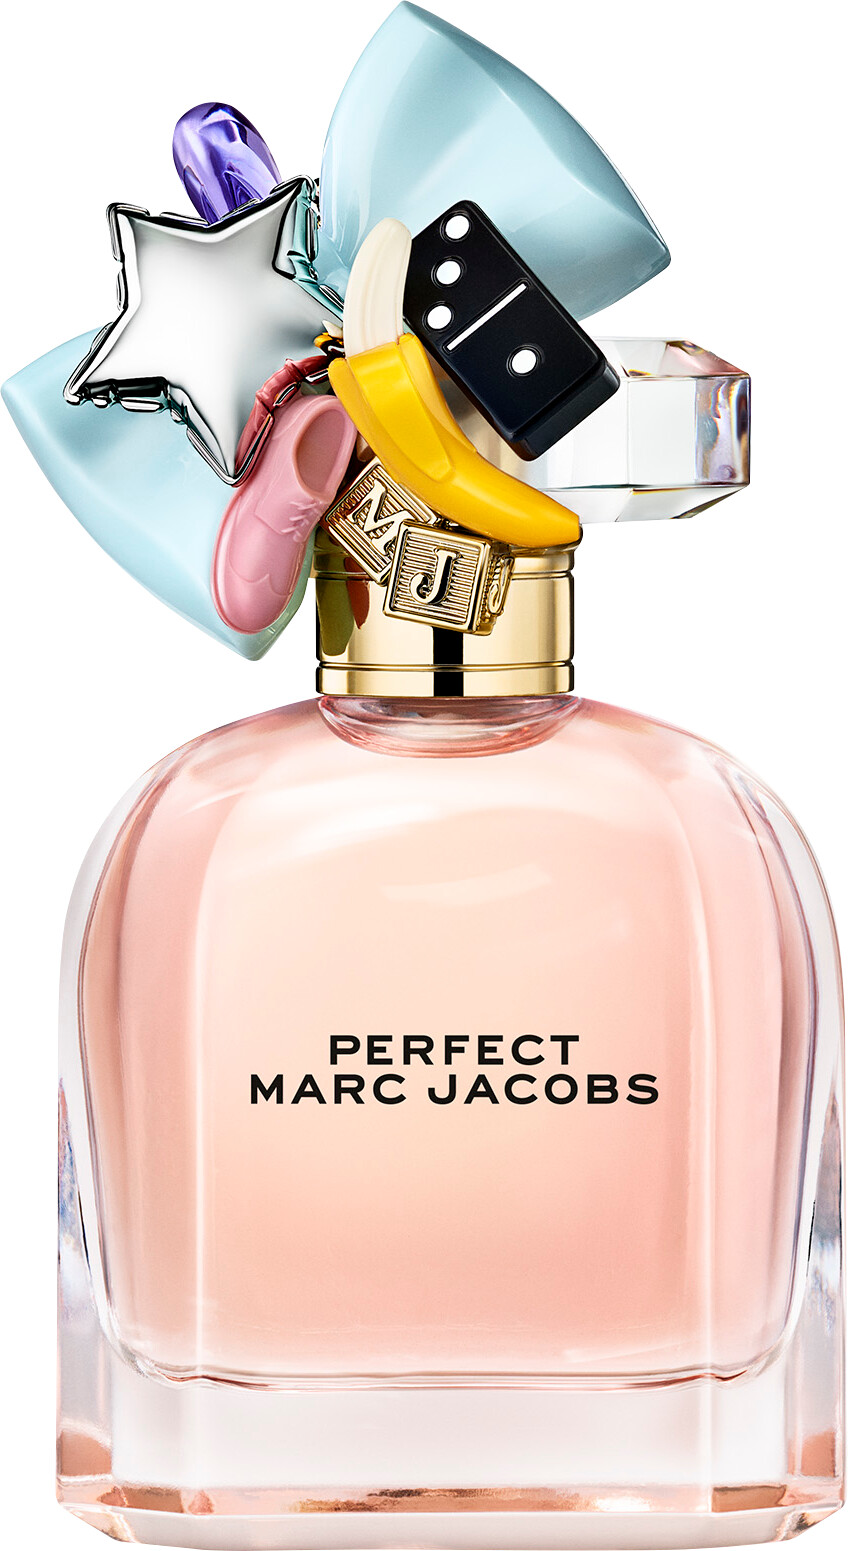 Parfum Marc Jacob - Homecare24